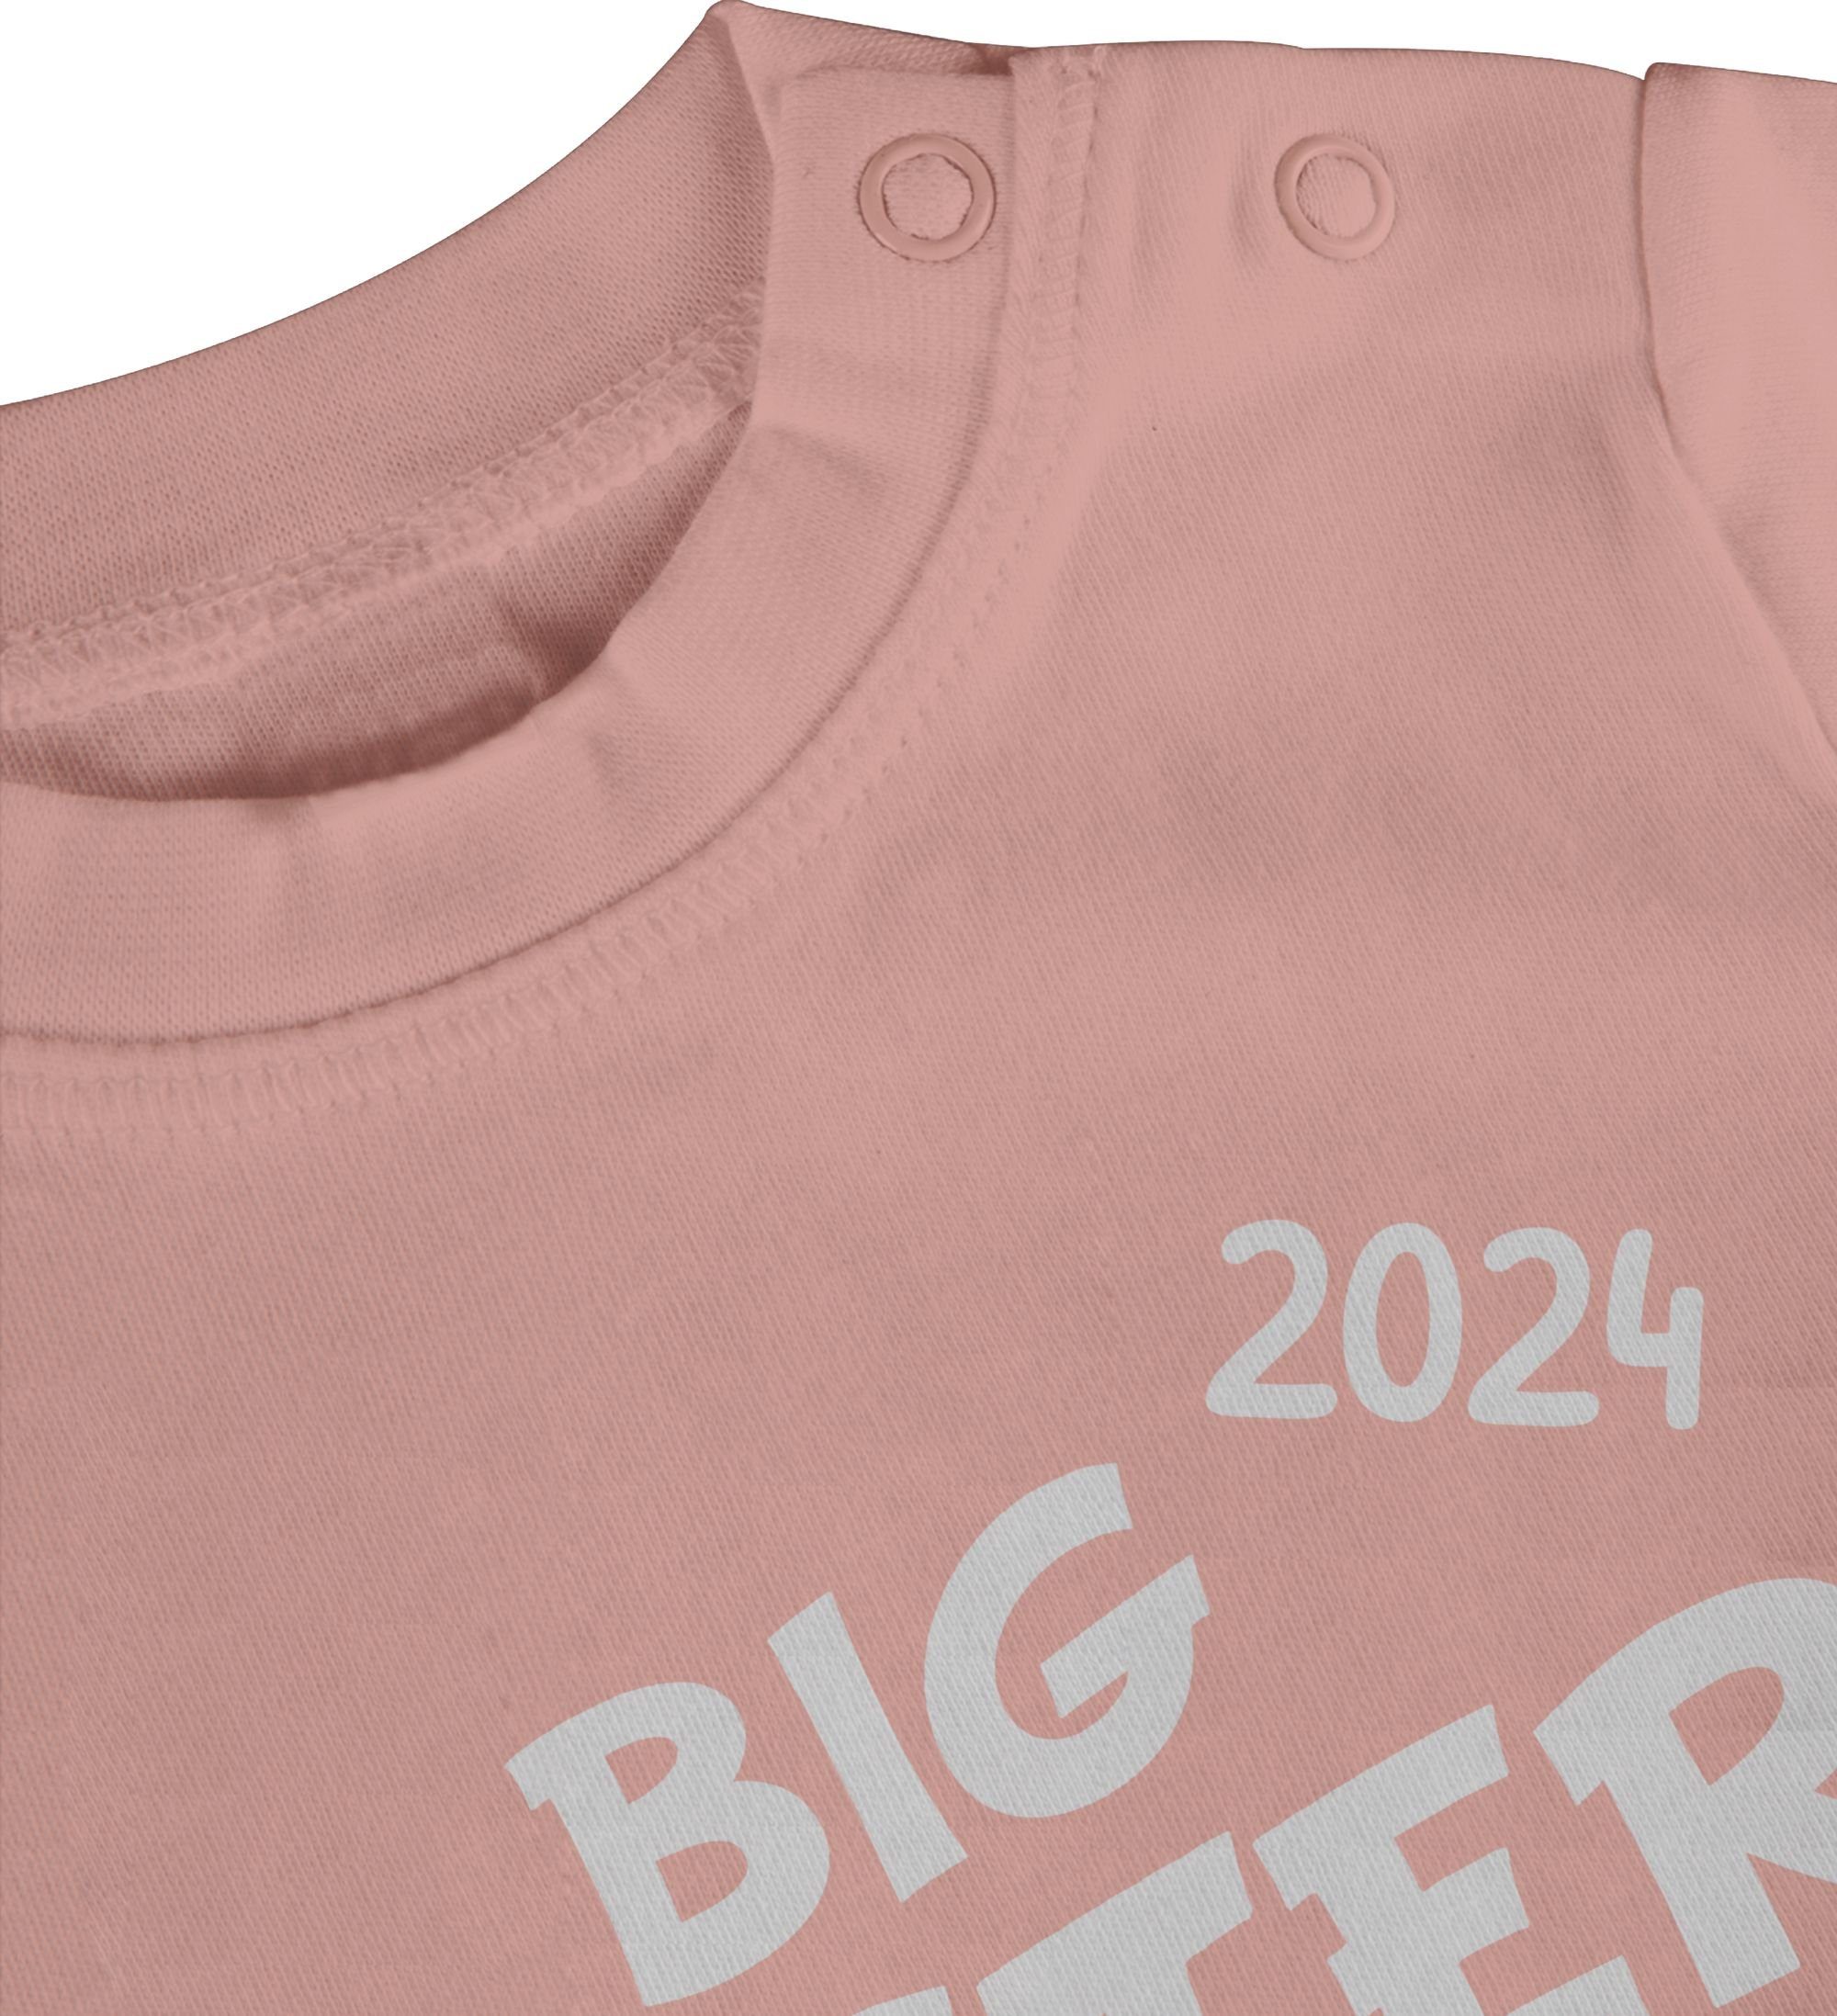 Babyrosa Shirtracer 1 loading 2024 Bruder Geschwister und Big Sister T-Shirt Schwester